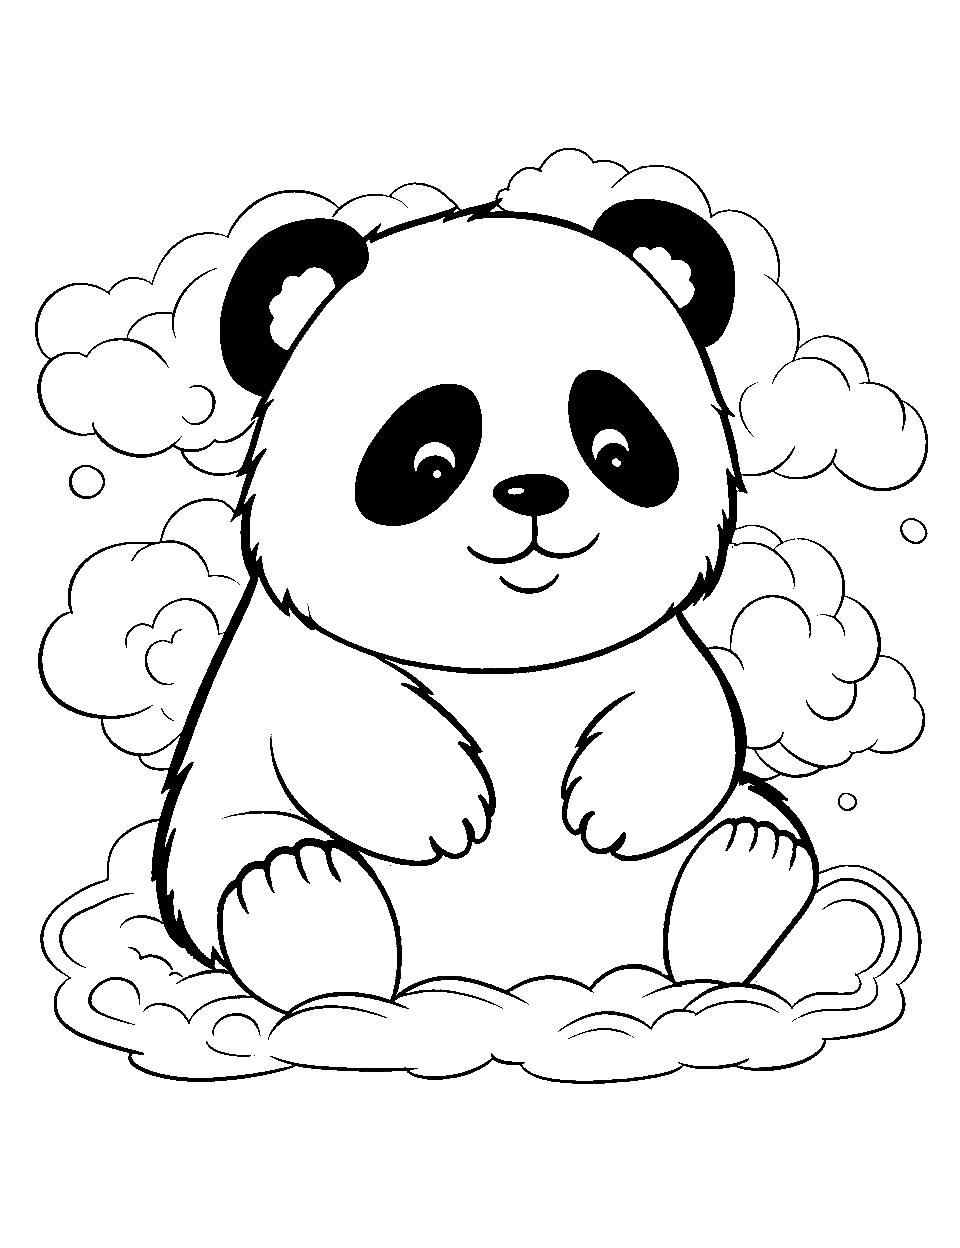 Panda coloring pages free printable sheets